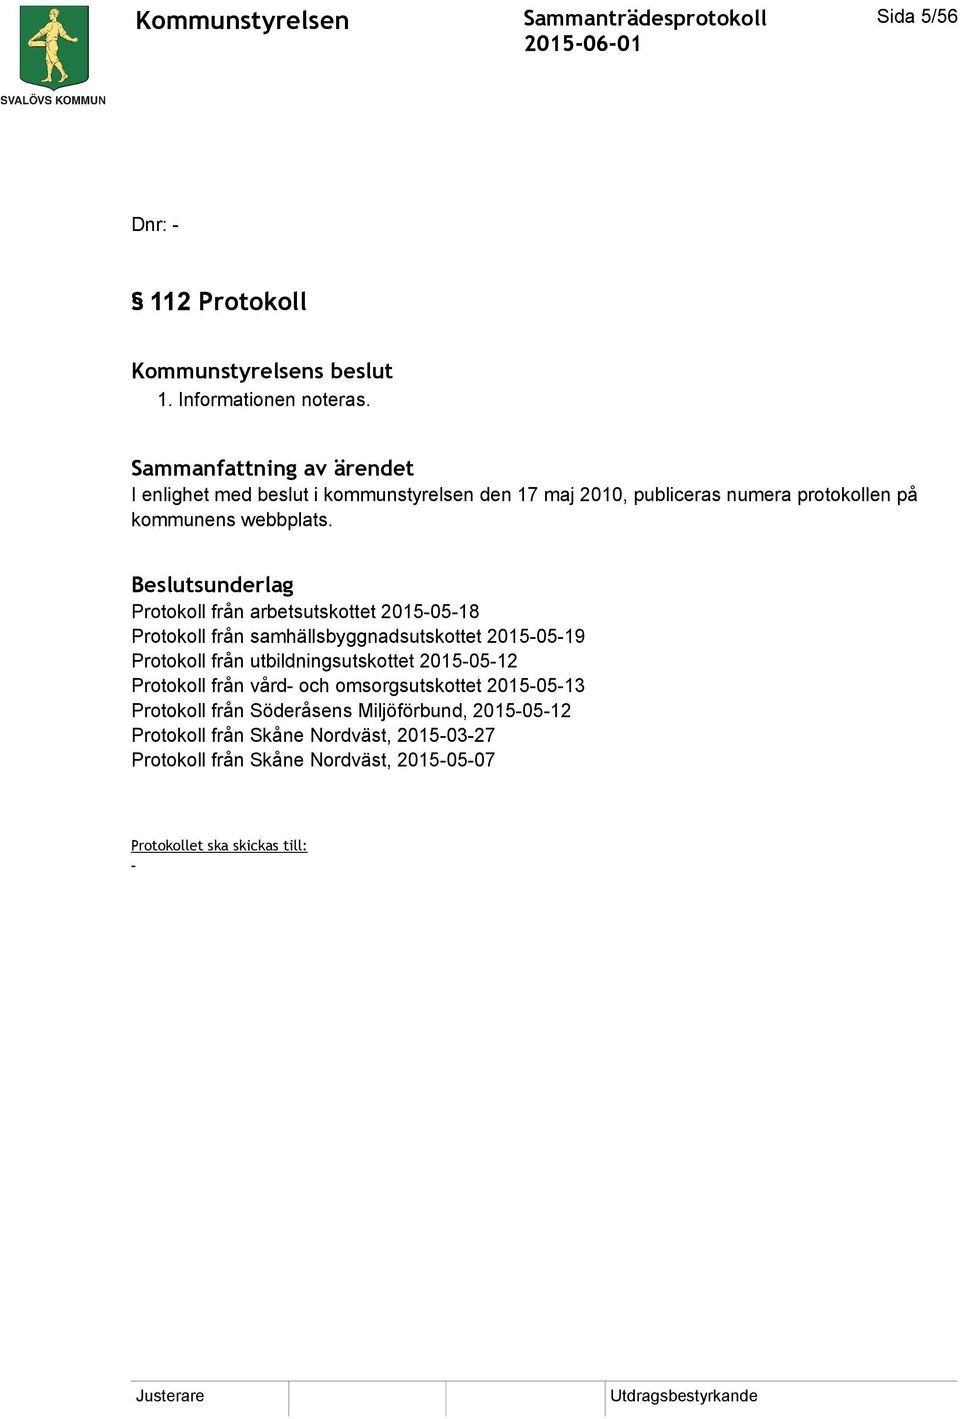 Beslutsunderlag Protokoll från arbetsutskottet 2015-05-18 Protokoll från samhällsbyggnadsutskottet 2015-05-19 Protokoll från utbildningsutskottet